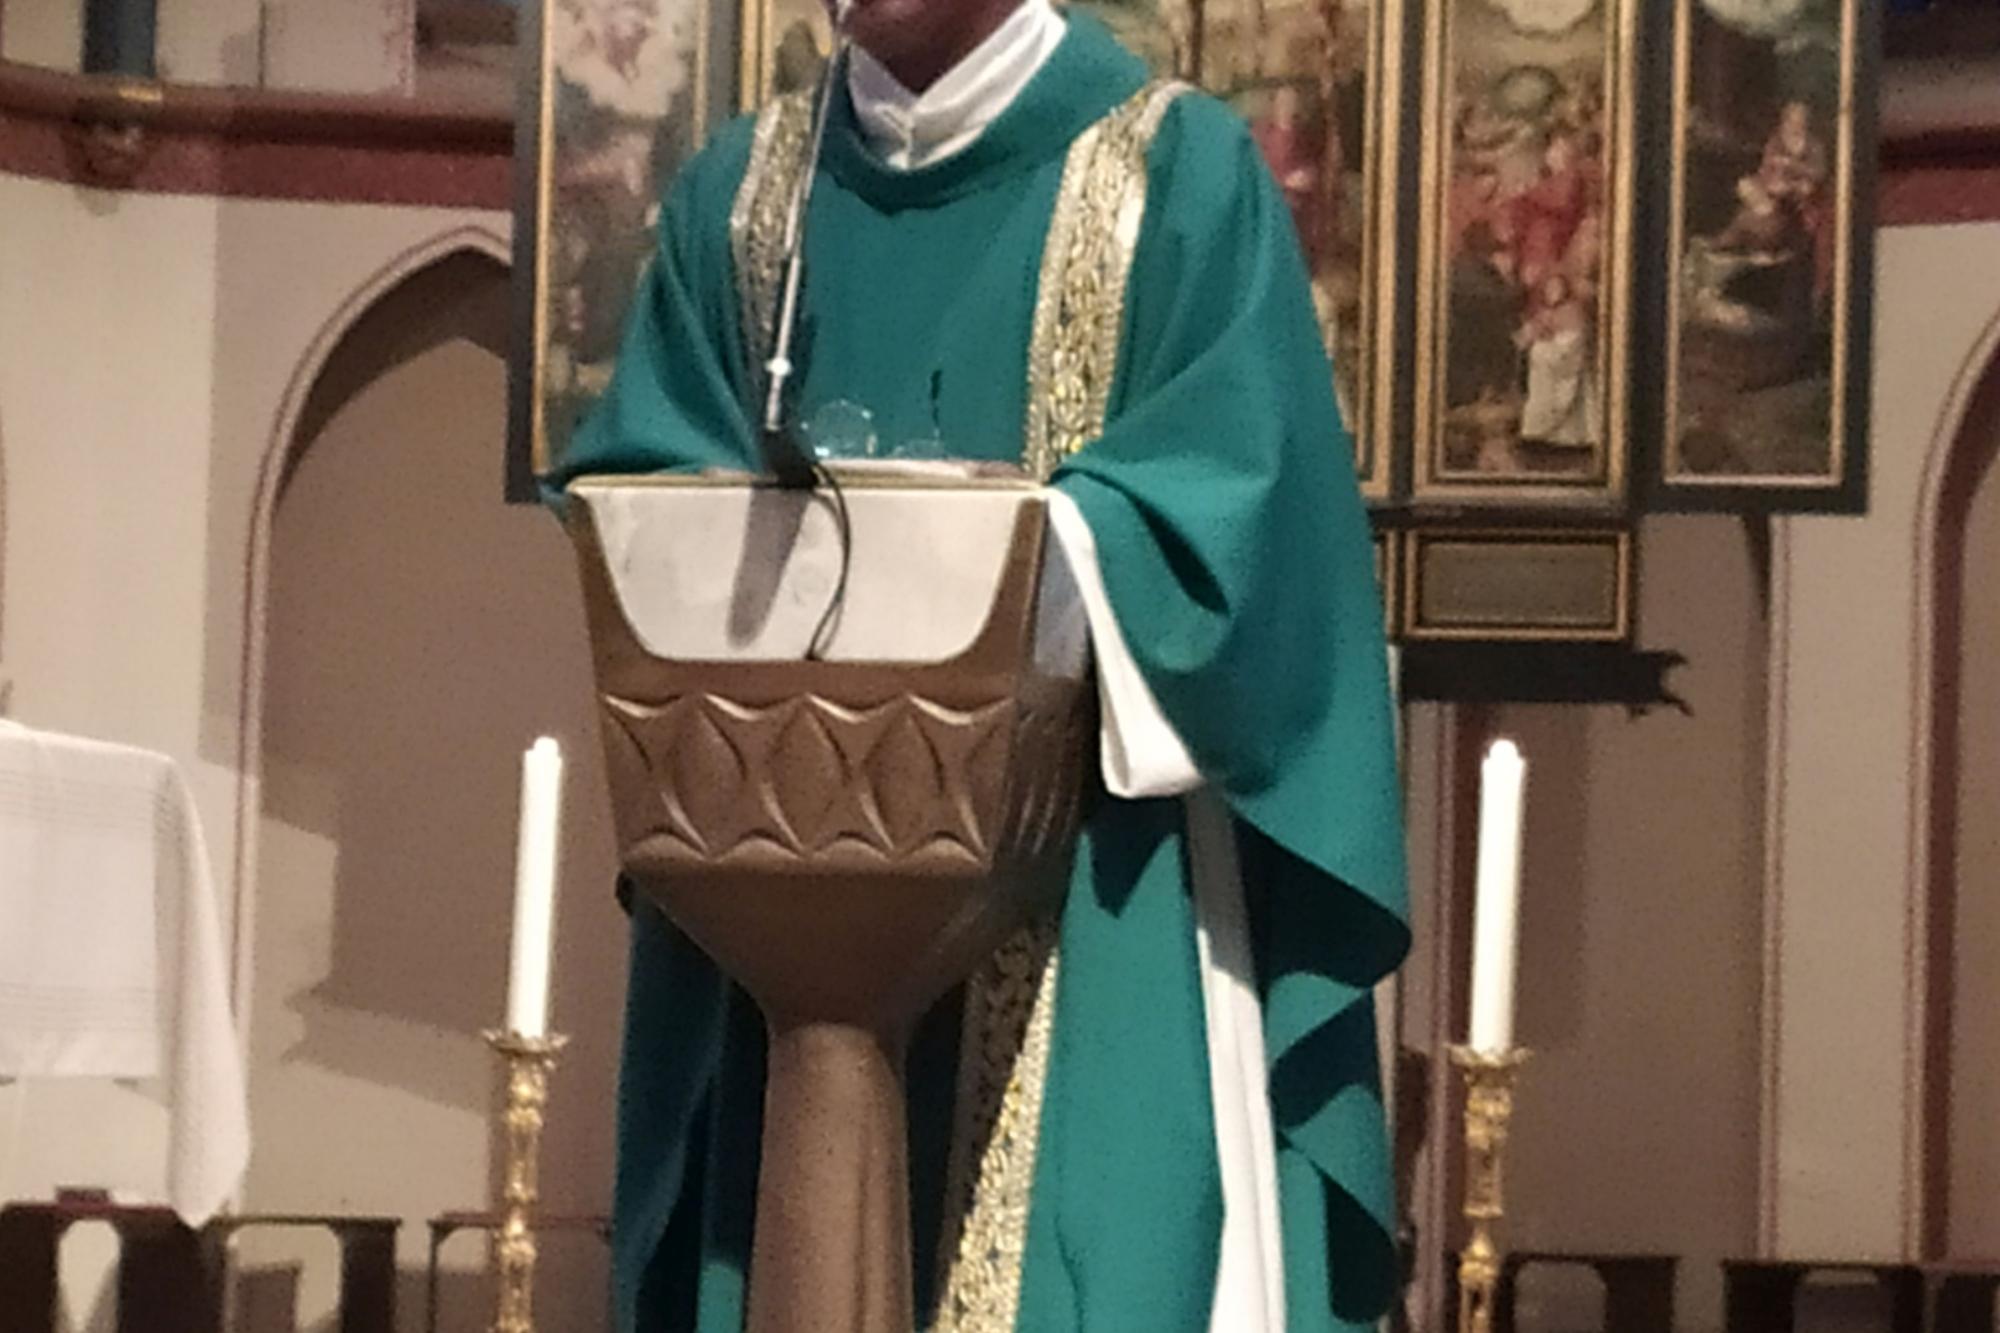 Padre Luis Carlos bei der Sonntagsmesse in St. Donatus, Aachen am 12.9.21